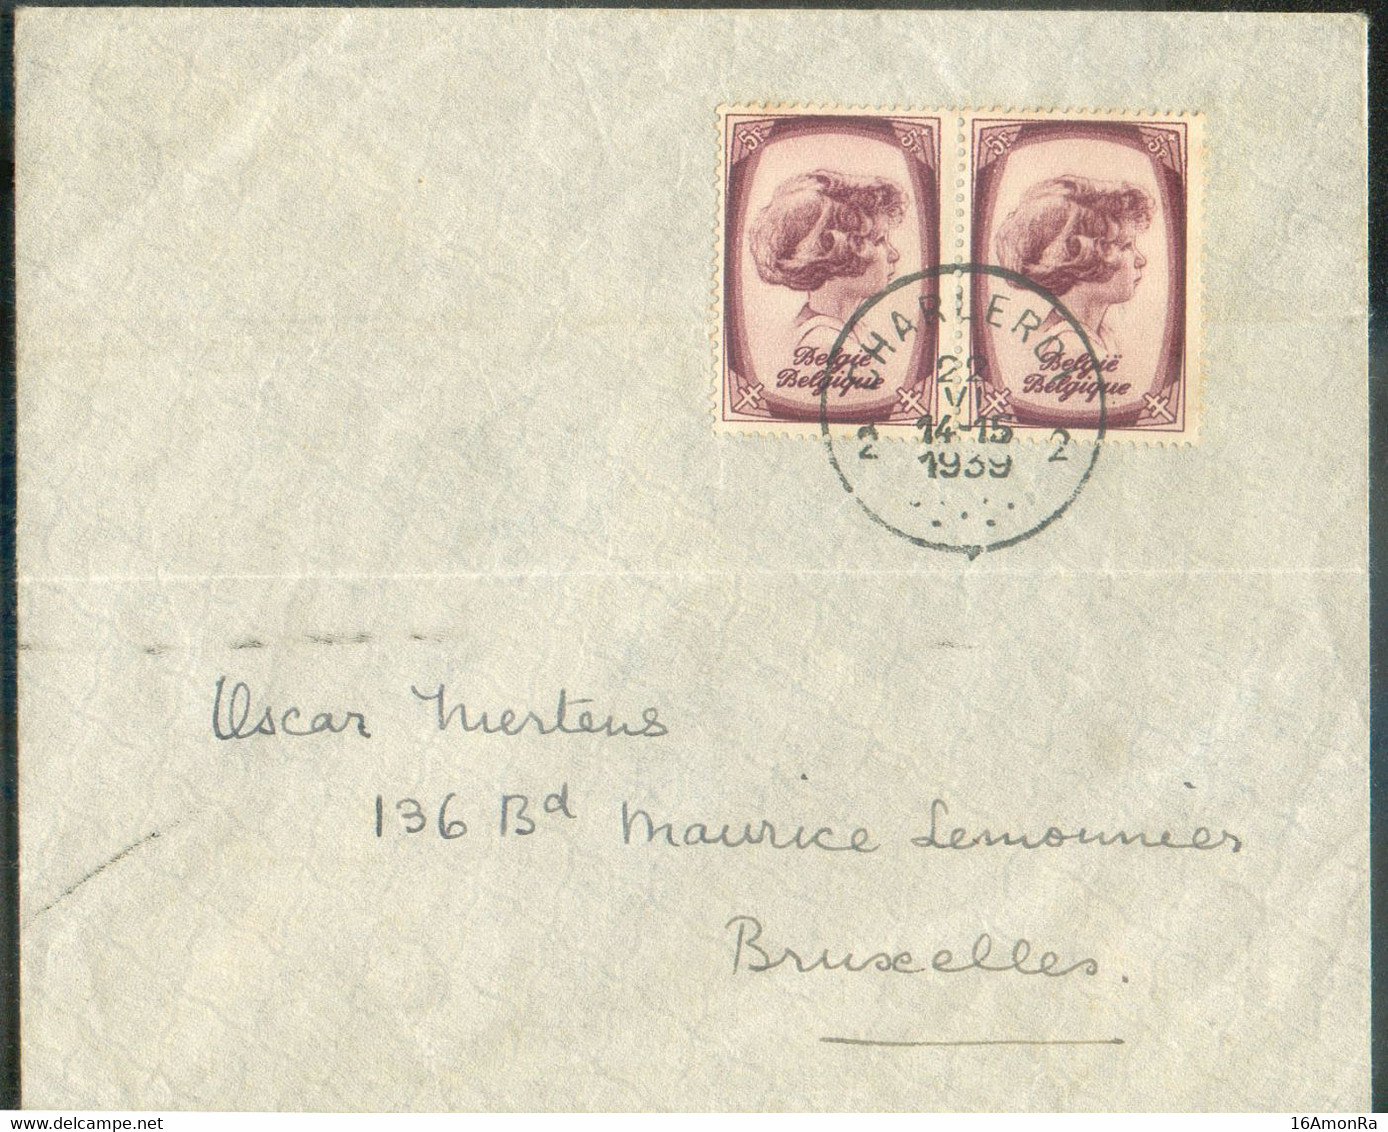 N°495(2) - 5Fr. PRINCE ALBERT (paire) Obl. Sc CHARLEROI 2 sur Enveloppe Du 22-VI-1939 Vers Bruxelles. - TB - 20425 - Covers & Documents